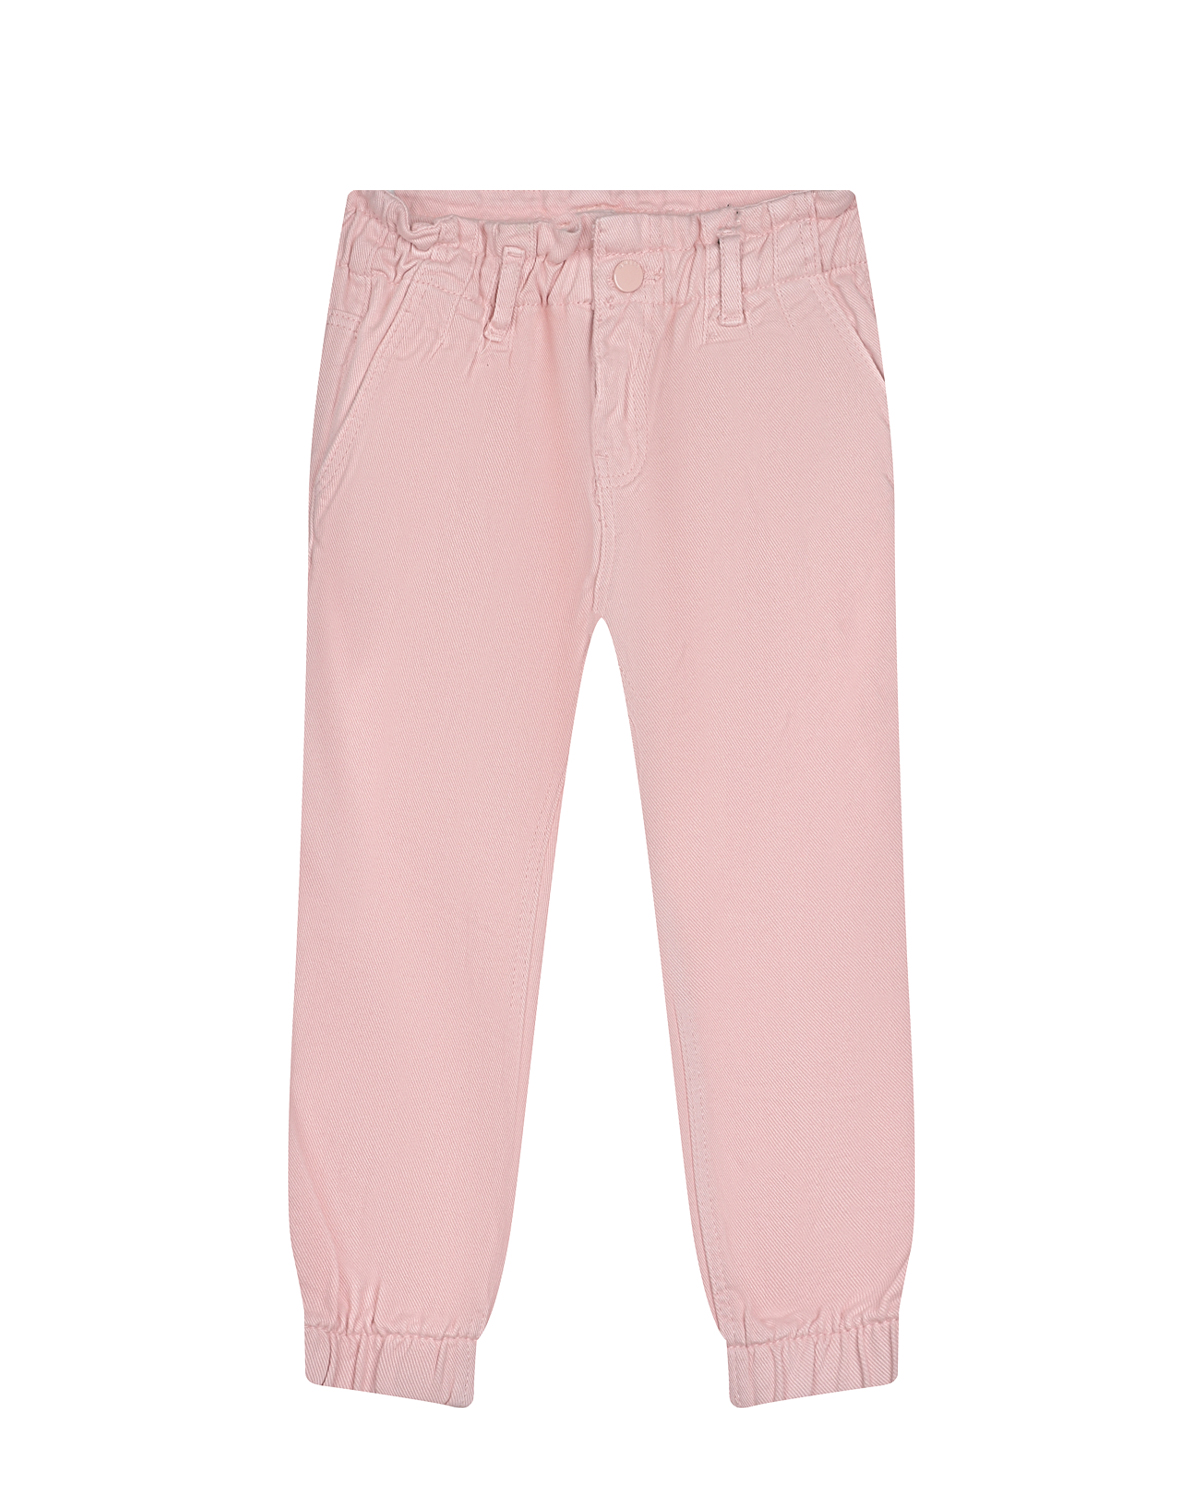 Розовые брюки с поясом на резинке Guess детские